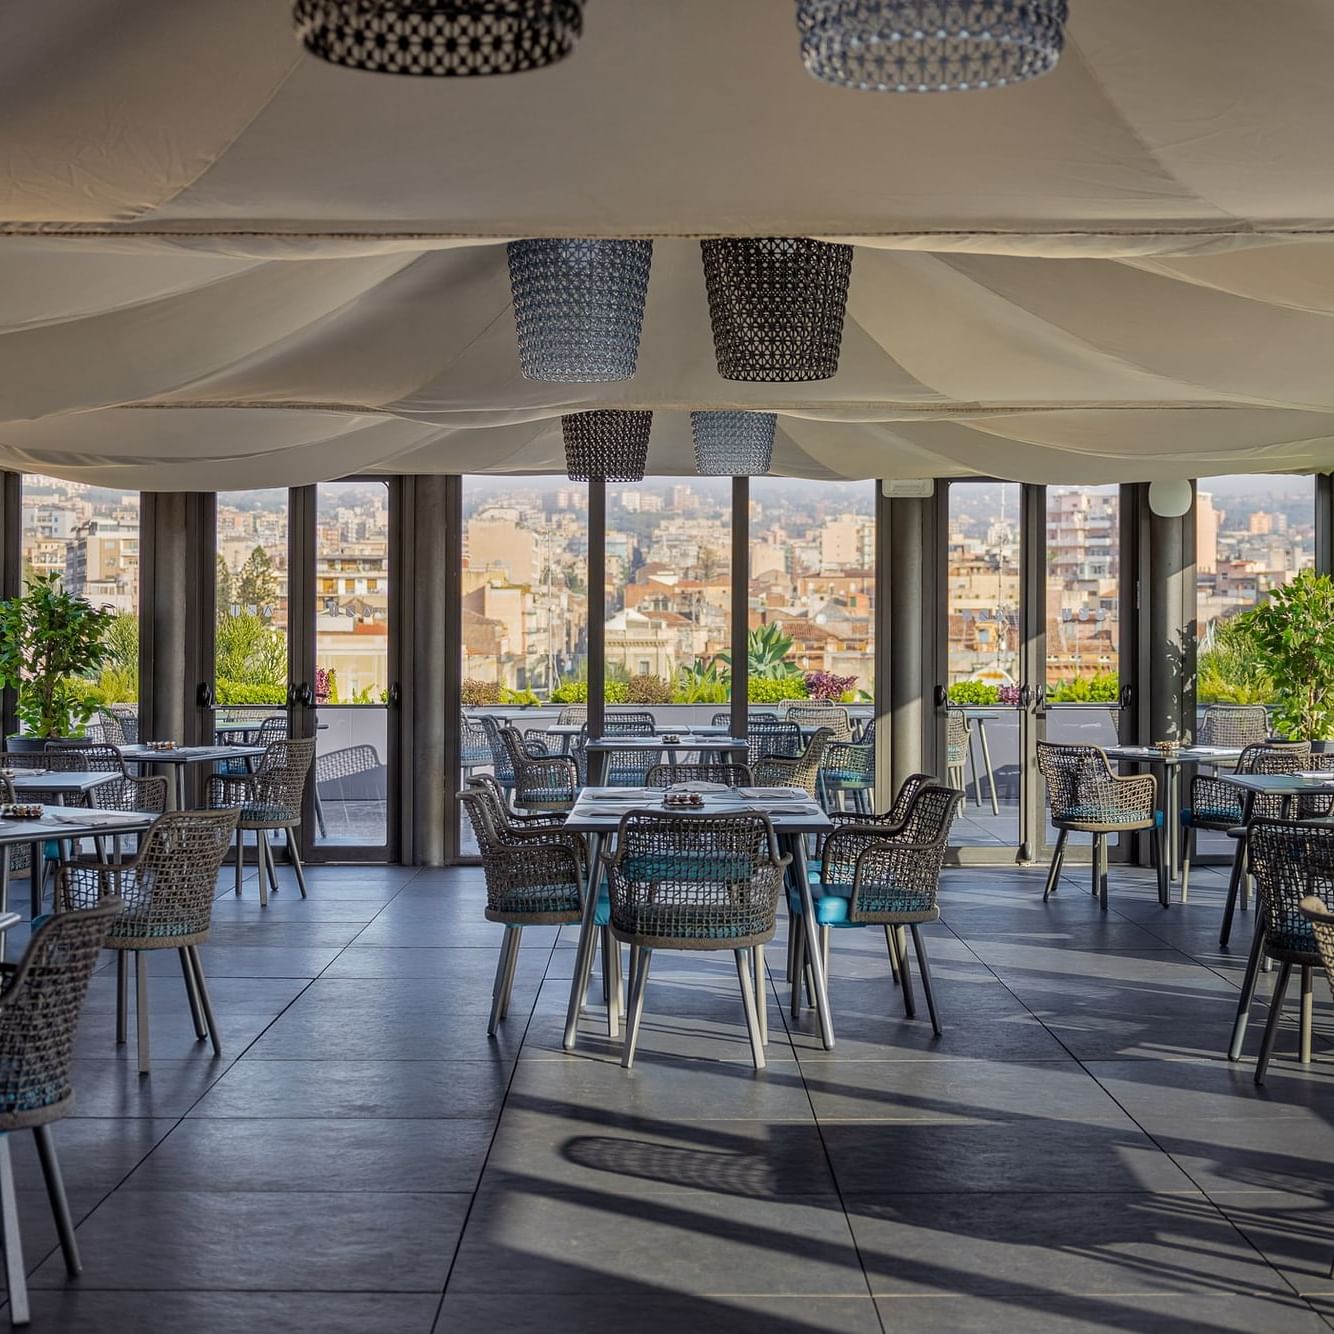 Restaurant in Catania: Etnea Roof Bar & Restaurant